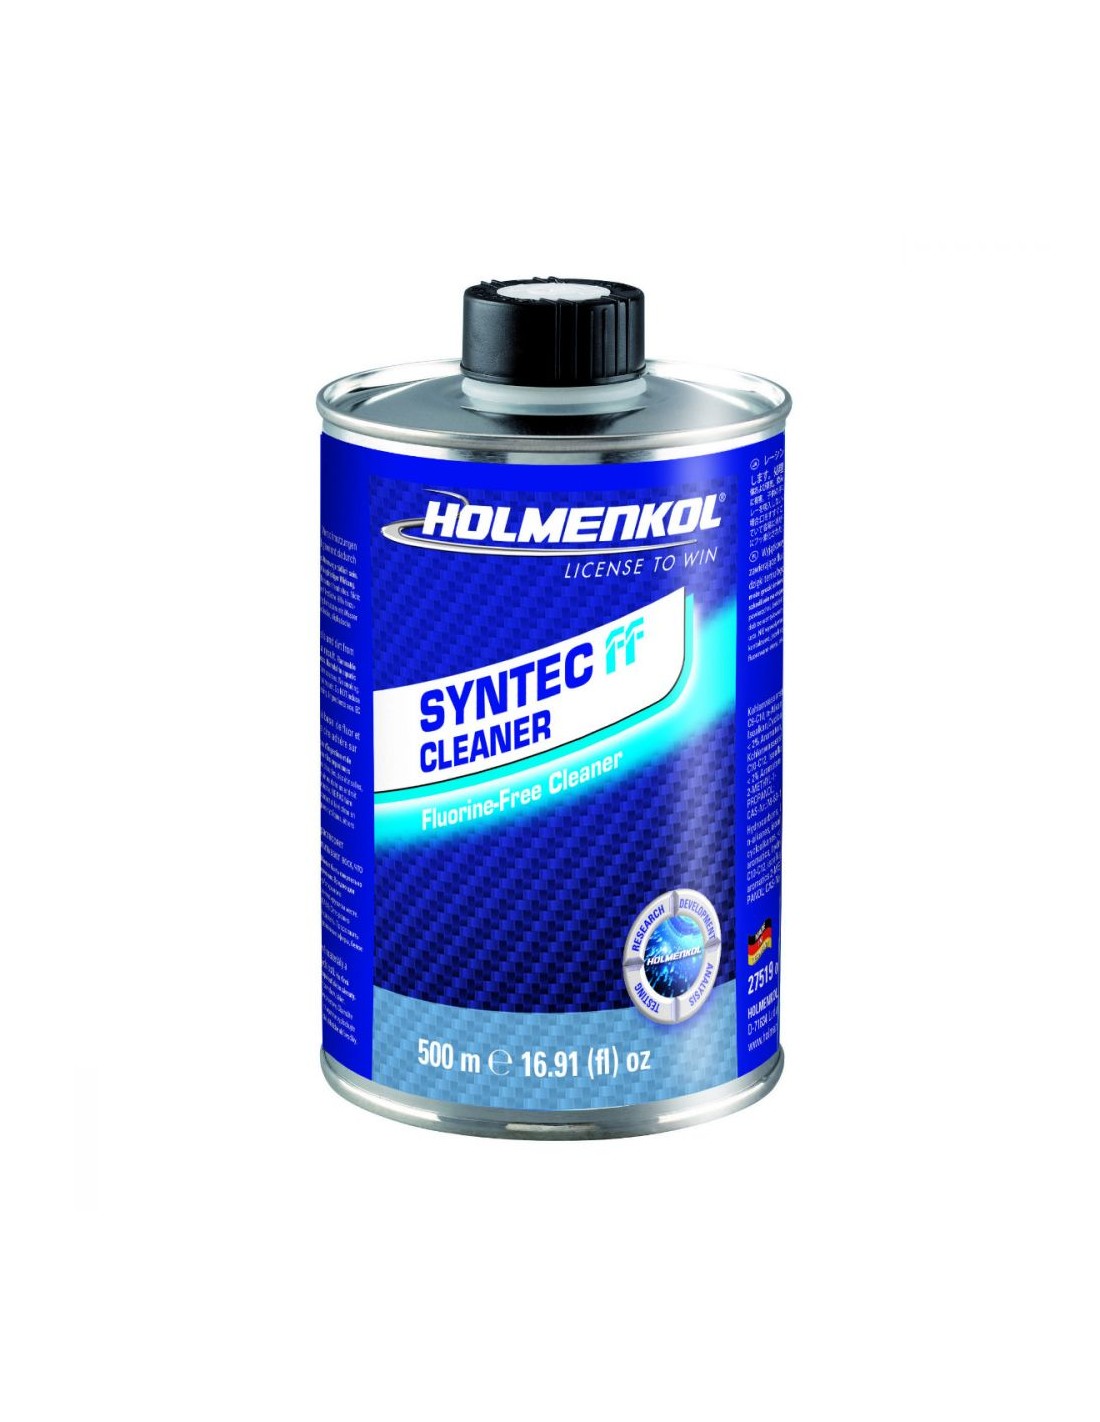 Holmenkol Syntec FF Cleaner 500ml von Holmenkol